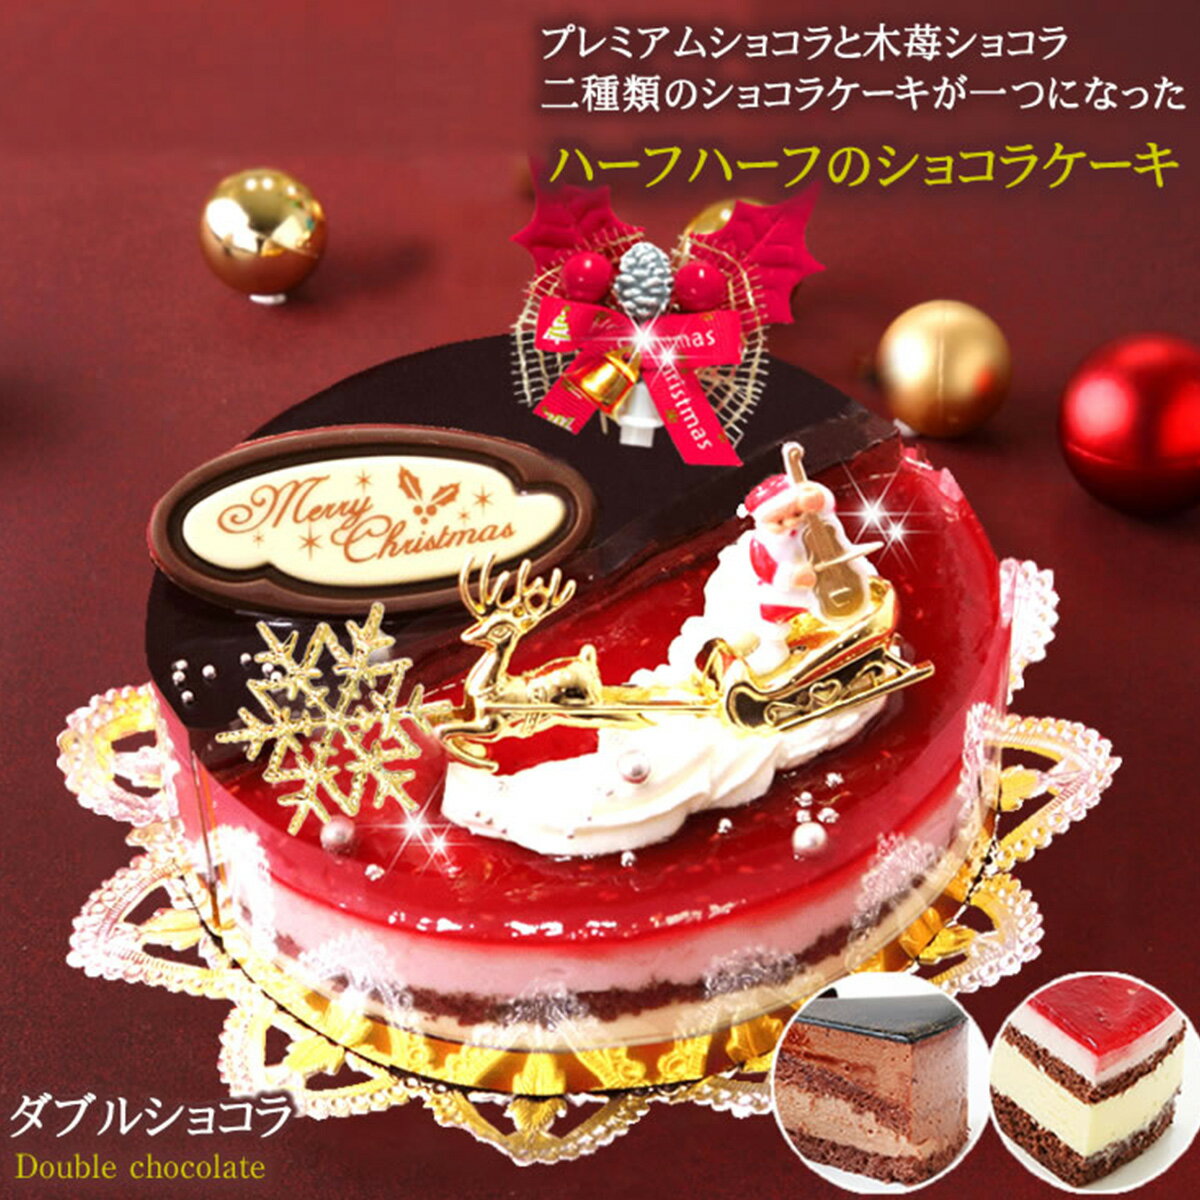 【ふるさと納税】北海道・新ひだか町のクリスマスケーキ『ダブルショコラ』2つの味わい♪チョコレートケーキ【お届け予定：12/20〜12/24】冷凍発送